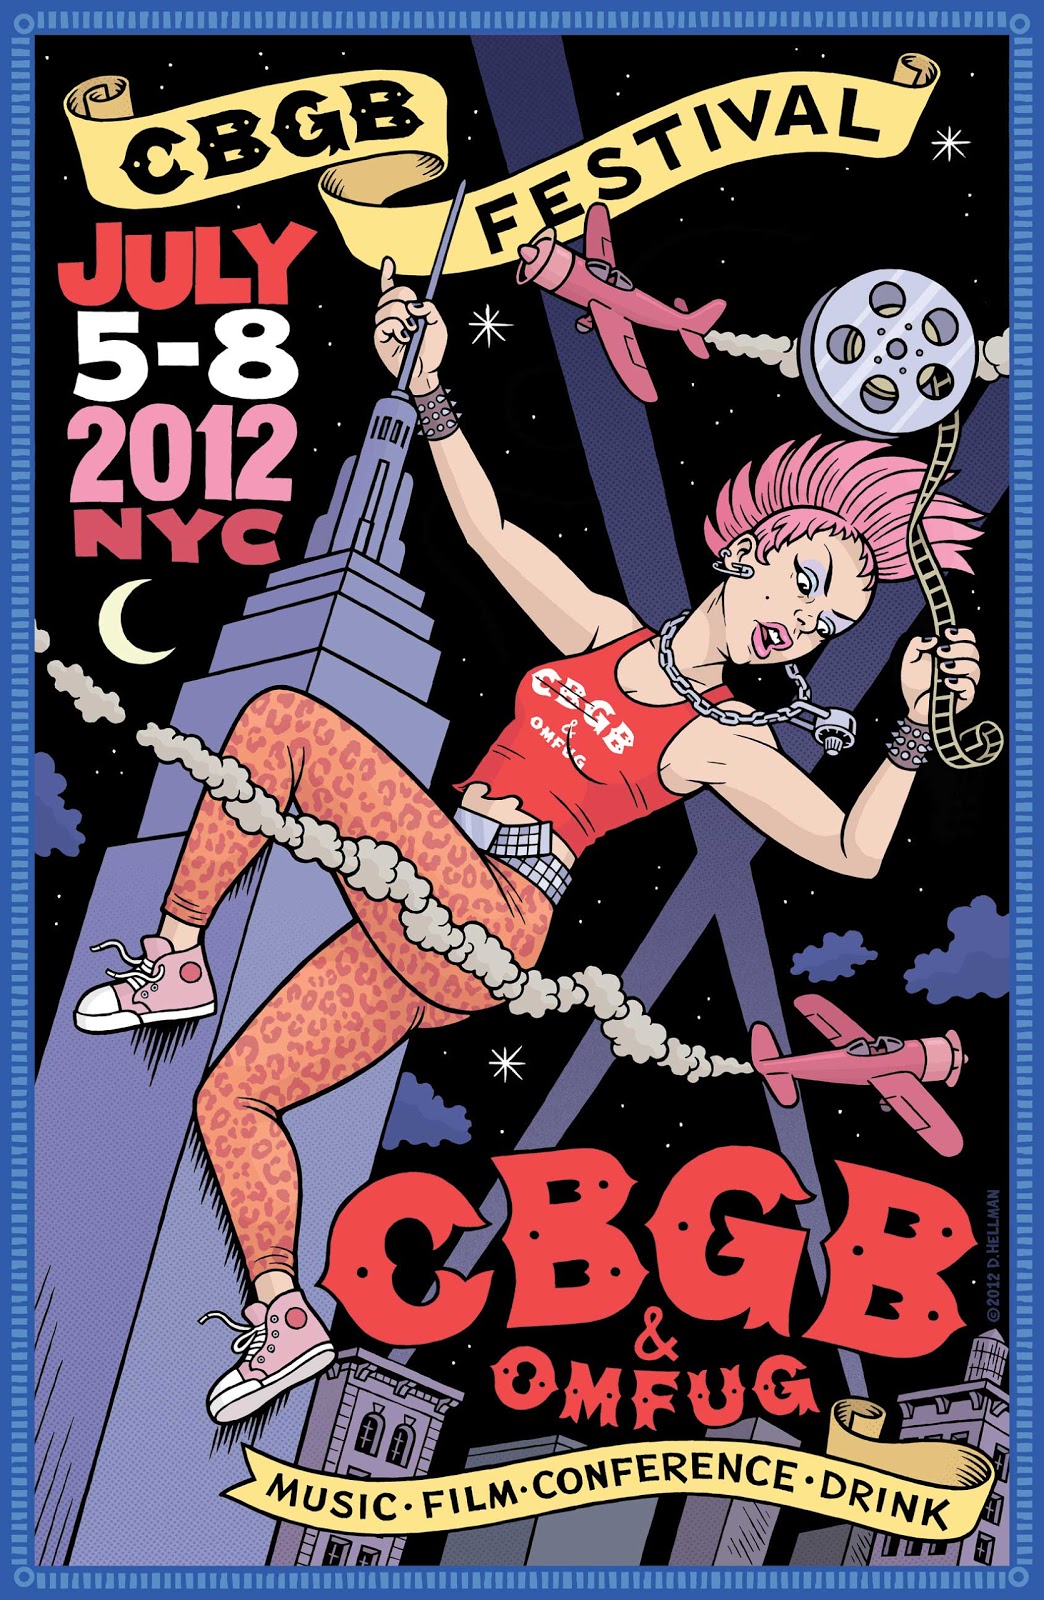 cbgb poster